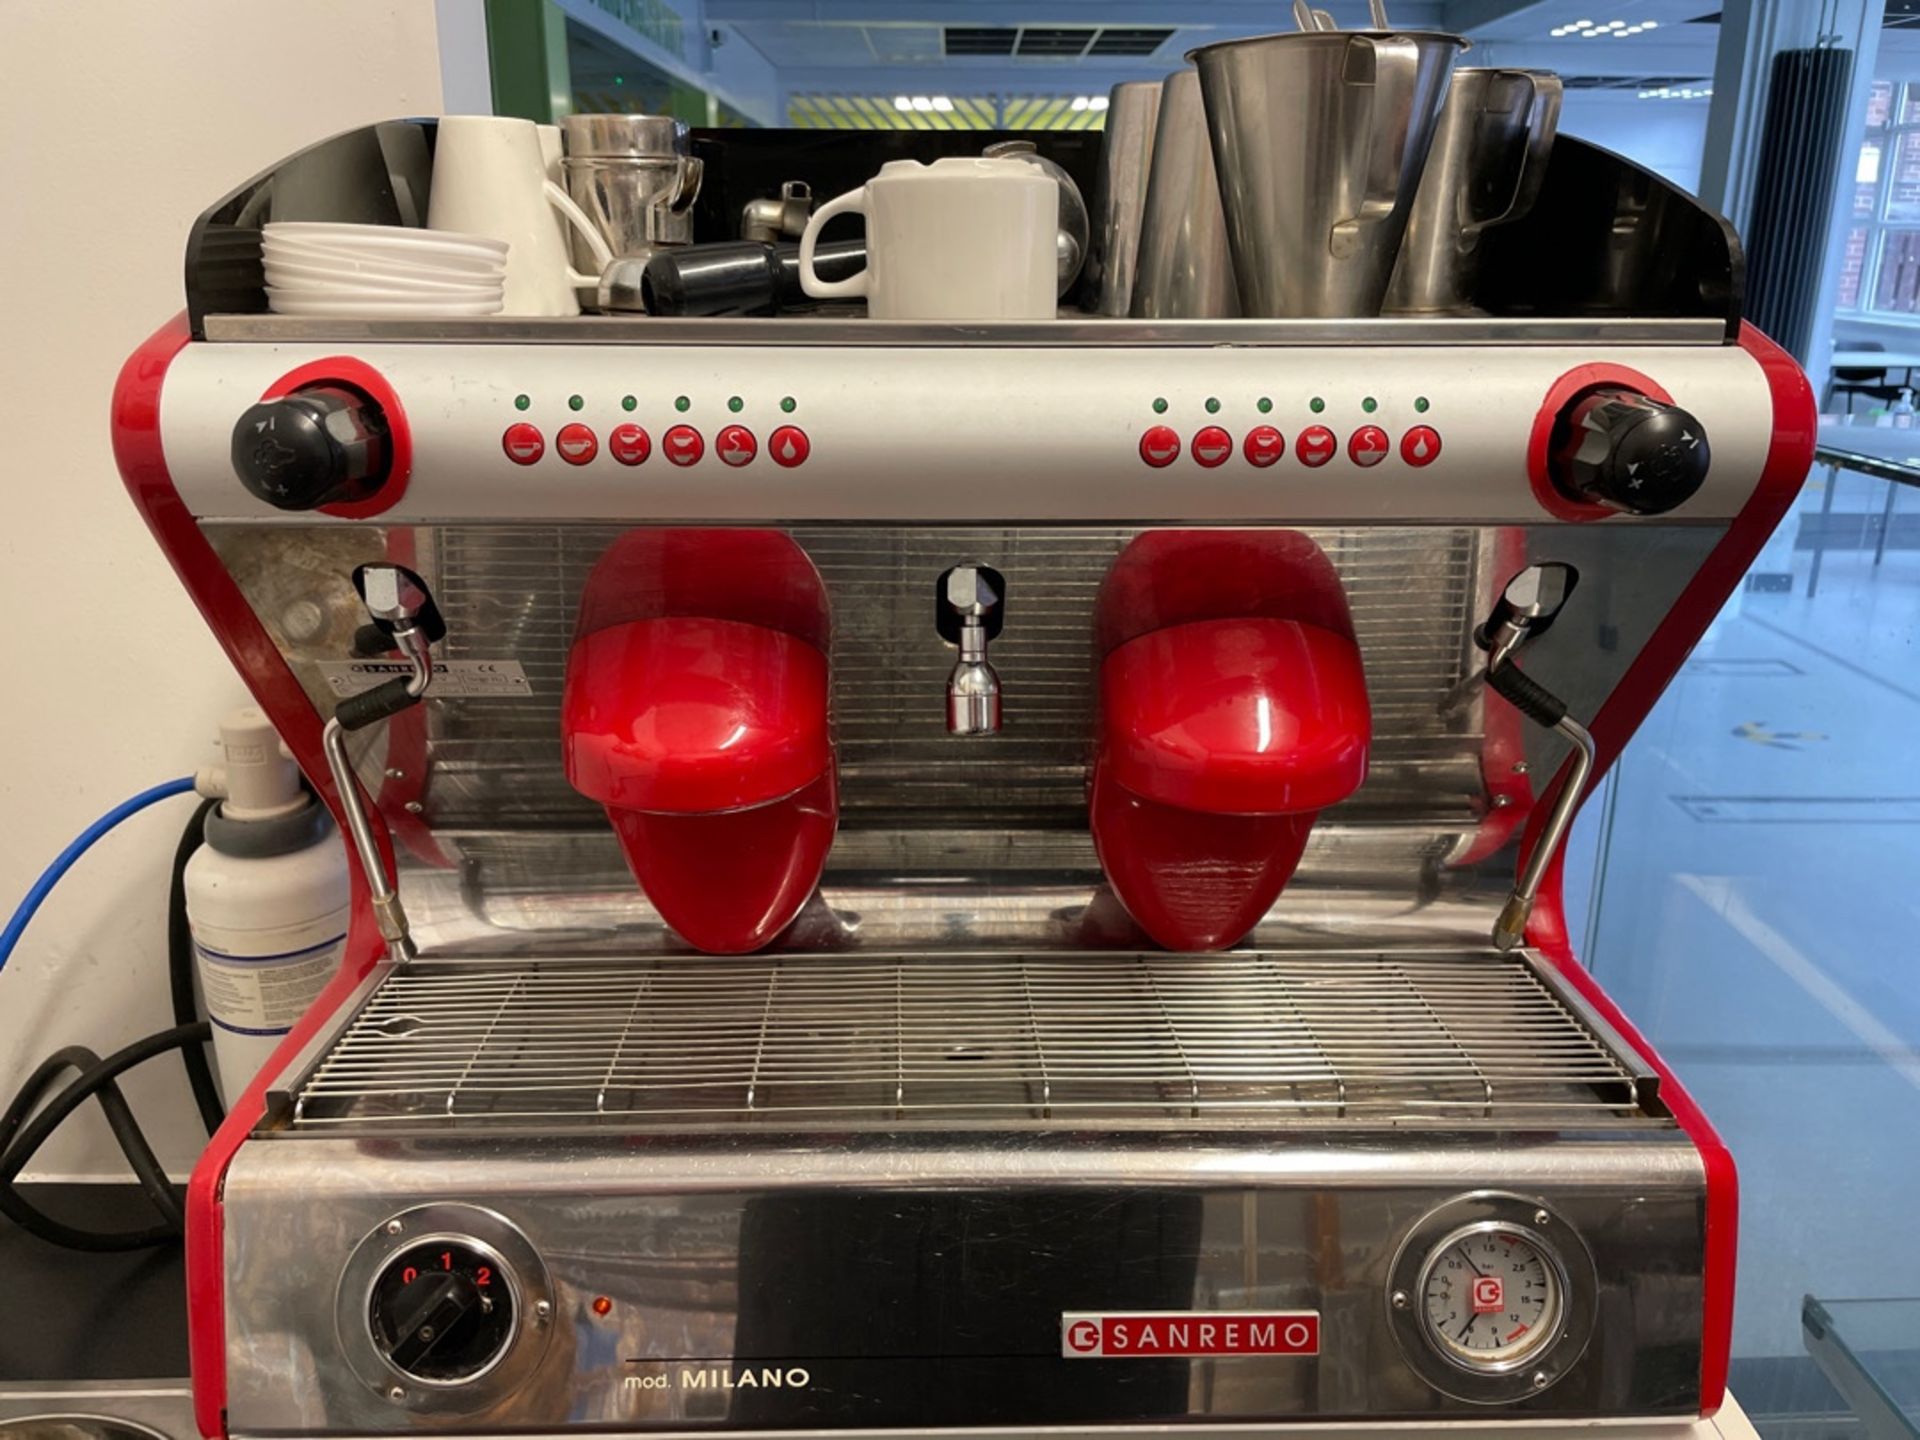 Sanremo Milano Traditional Espresso Machine